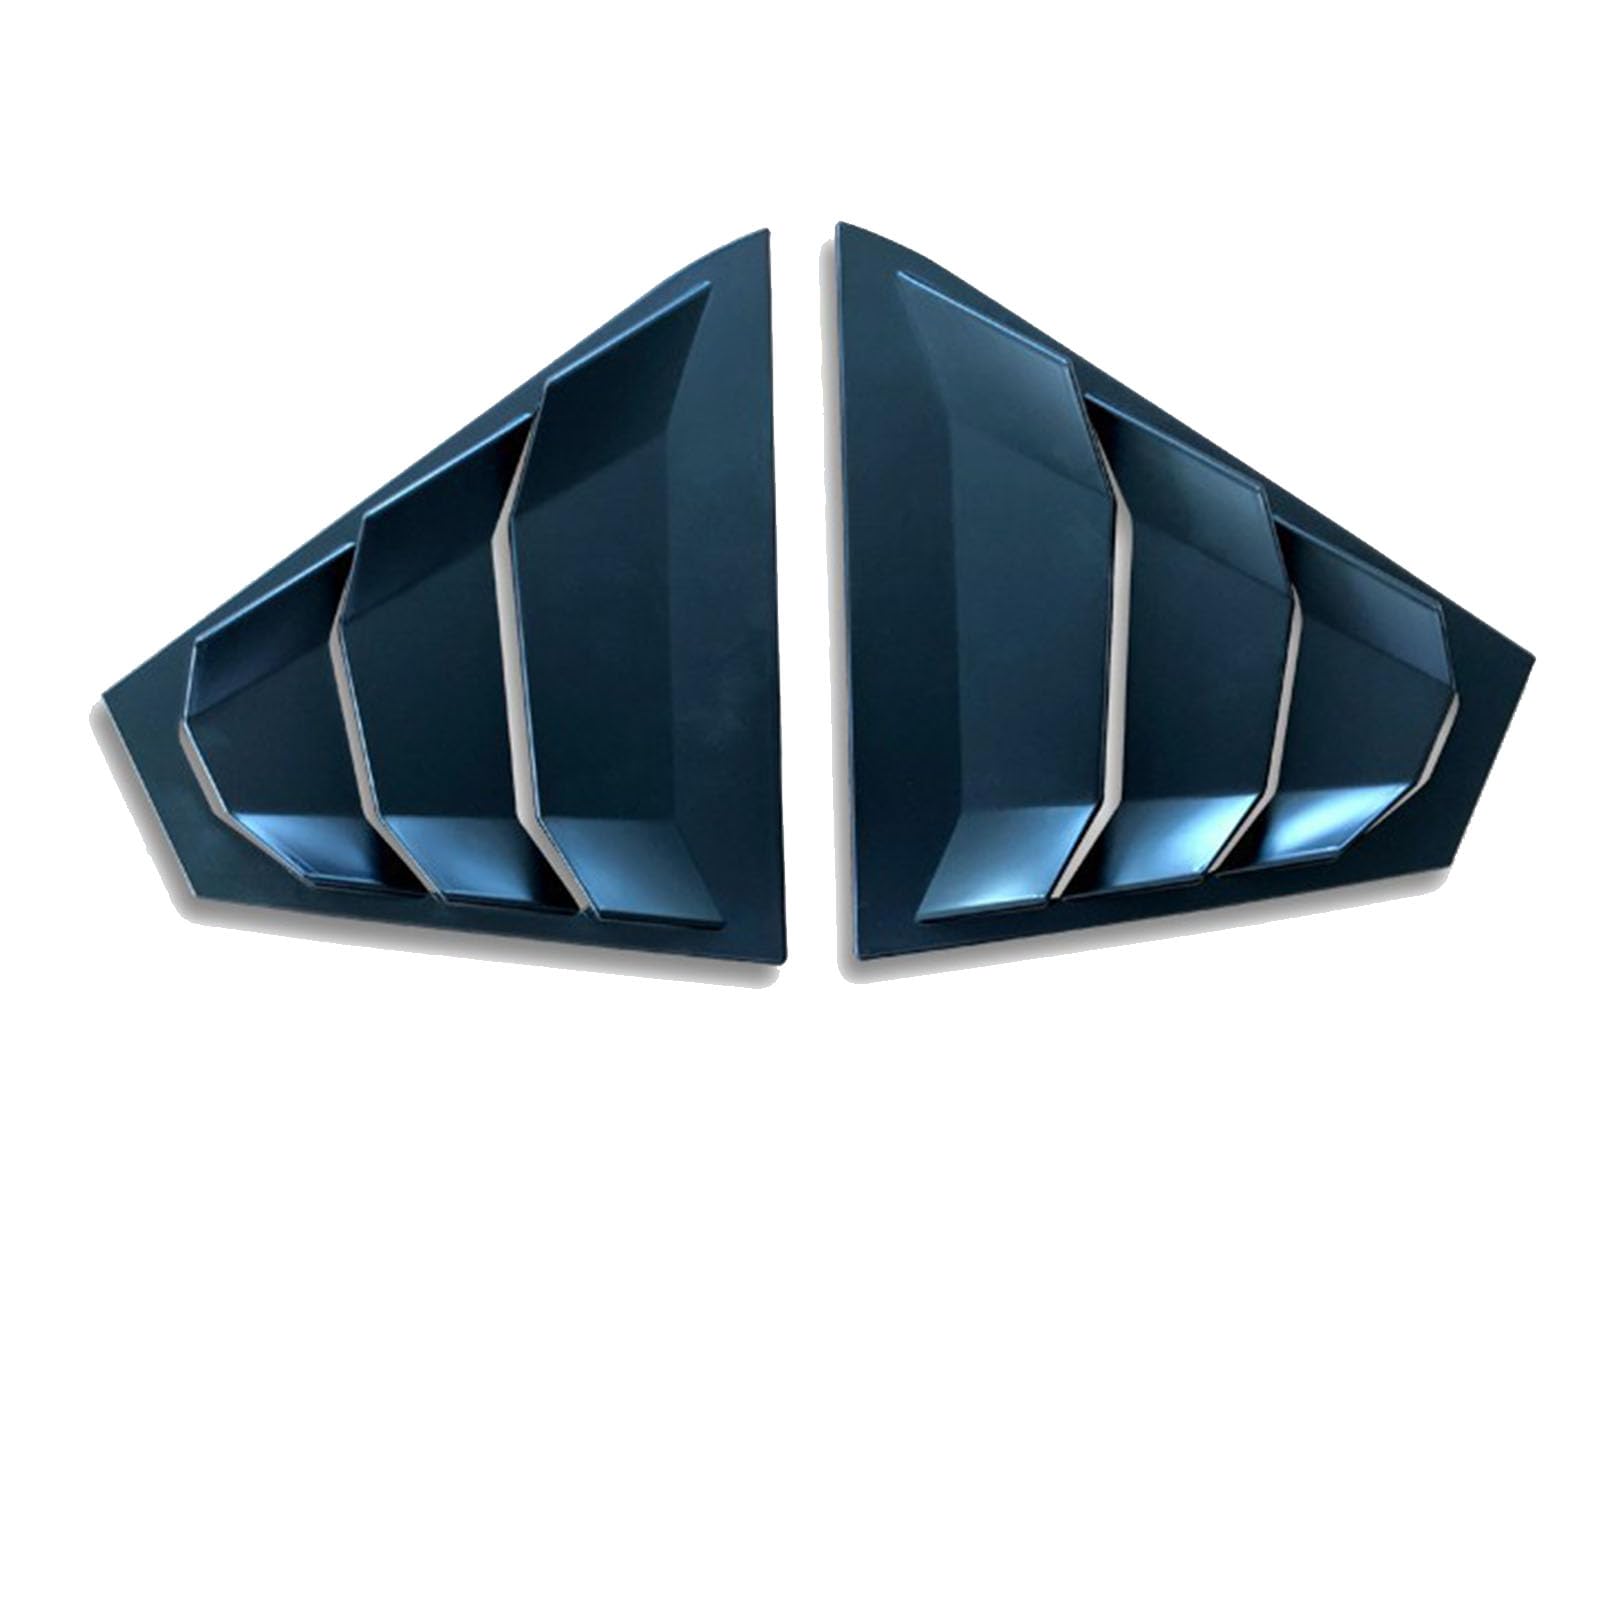 YPFYBHD Heckfenster-Jalousien, Kompatibel für Nissan Altima 2019-2022, 2 Stück Dreieck-Jalousien, Dekorative Abdeckung für seitliche Lüftungsblenden, C Matt Black von YPFYBHD